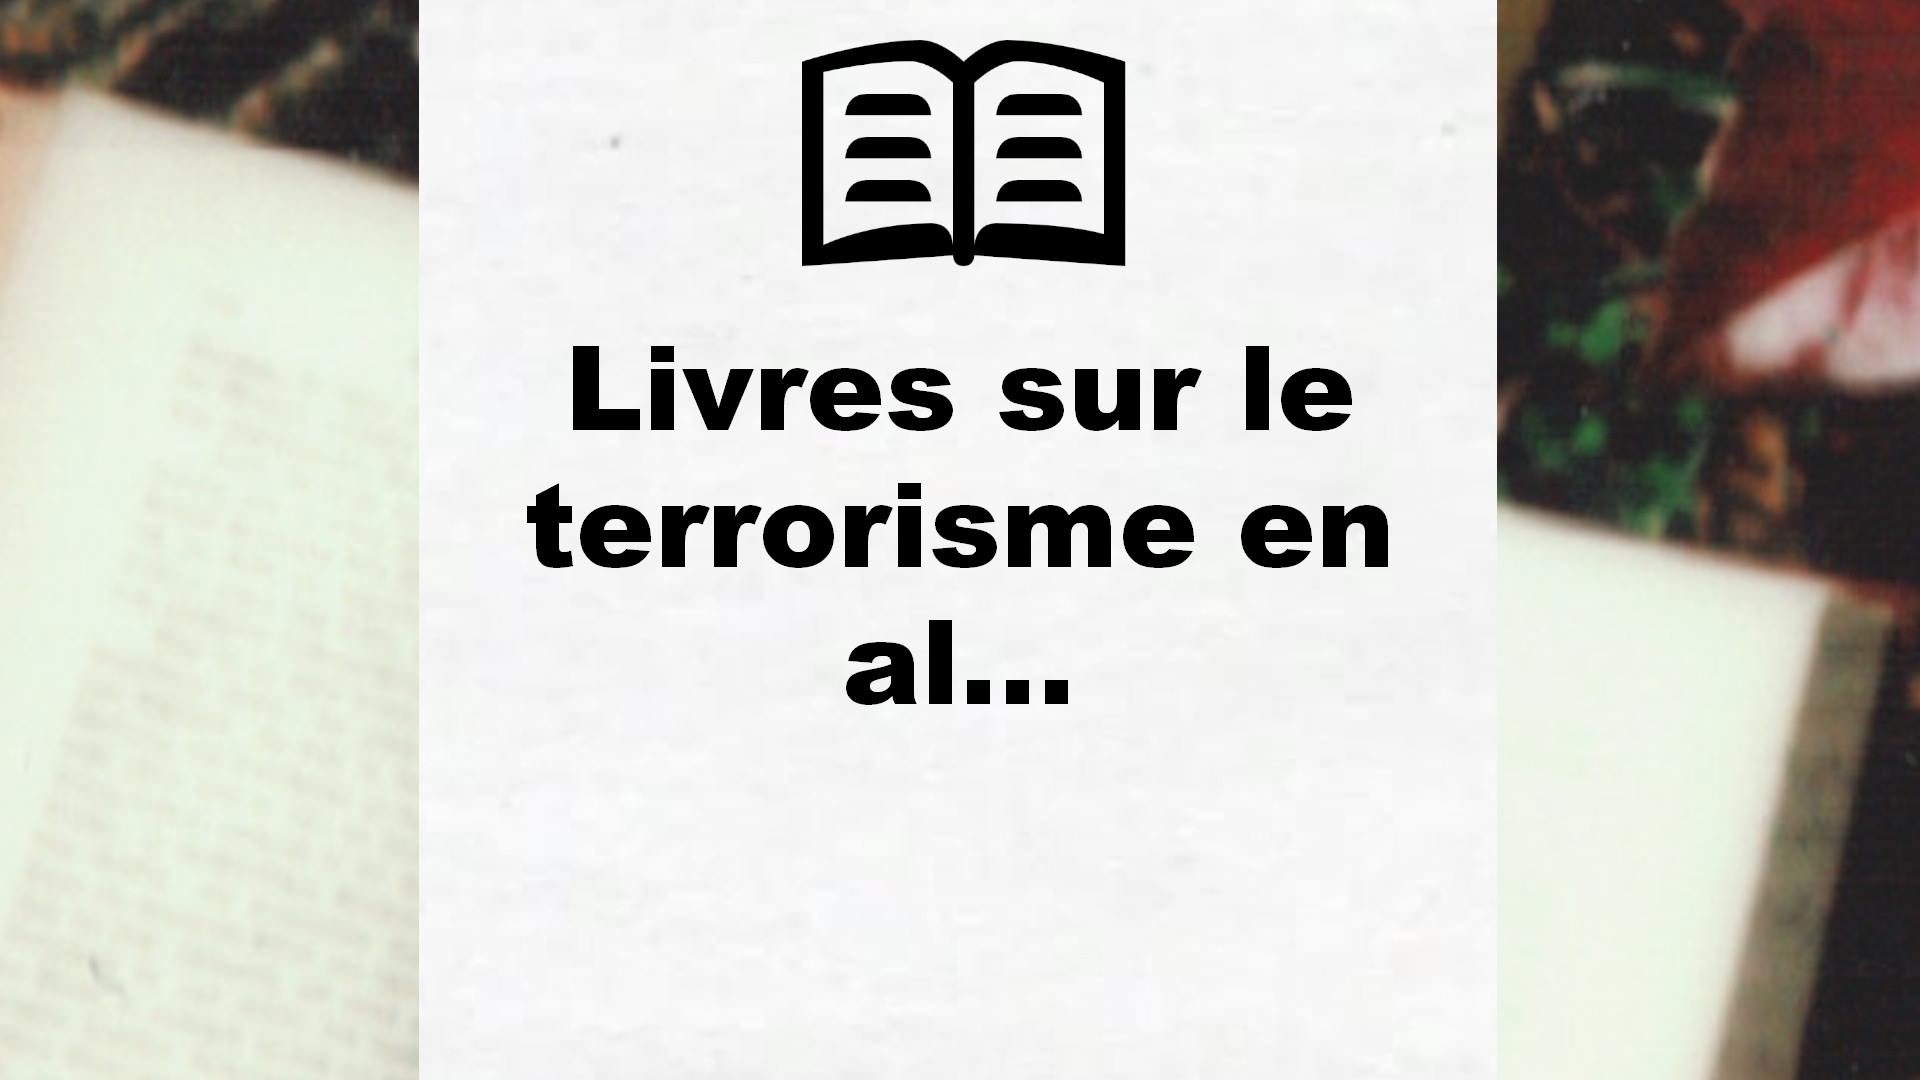 Livres sur le terrorisme en algerie